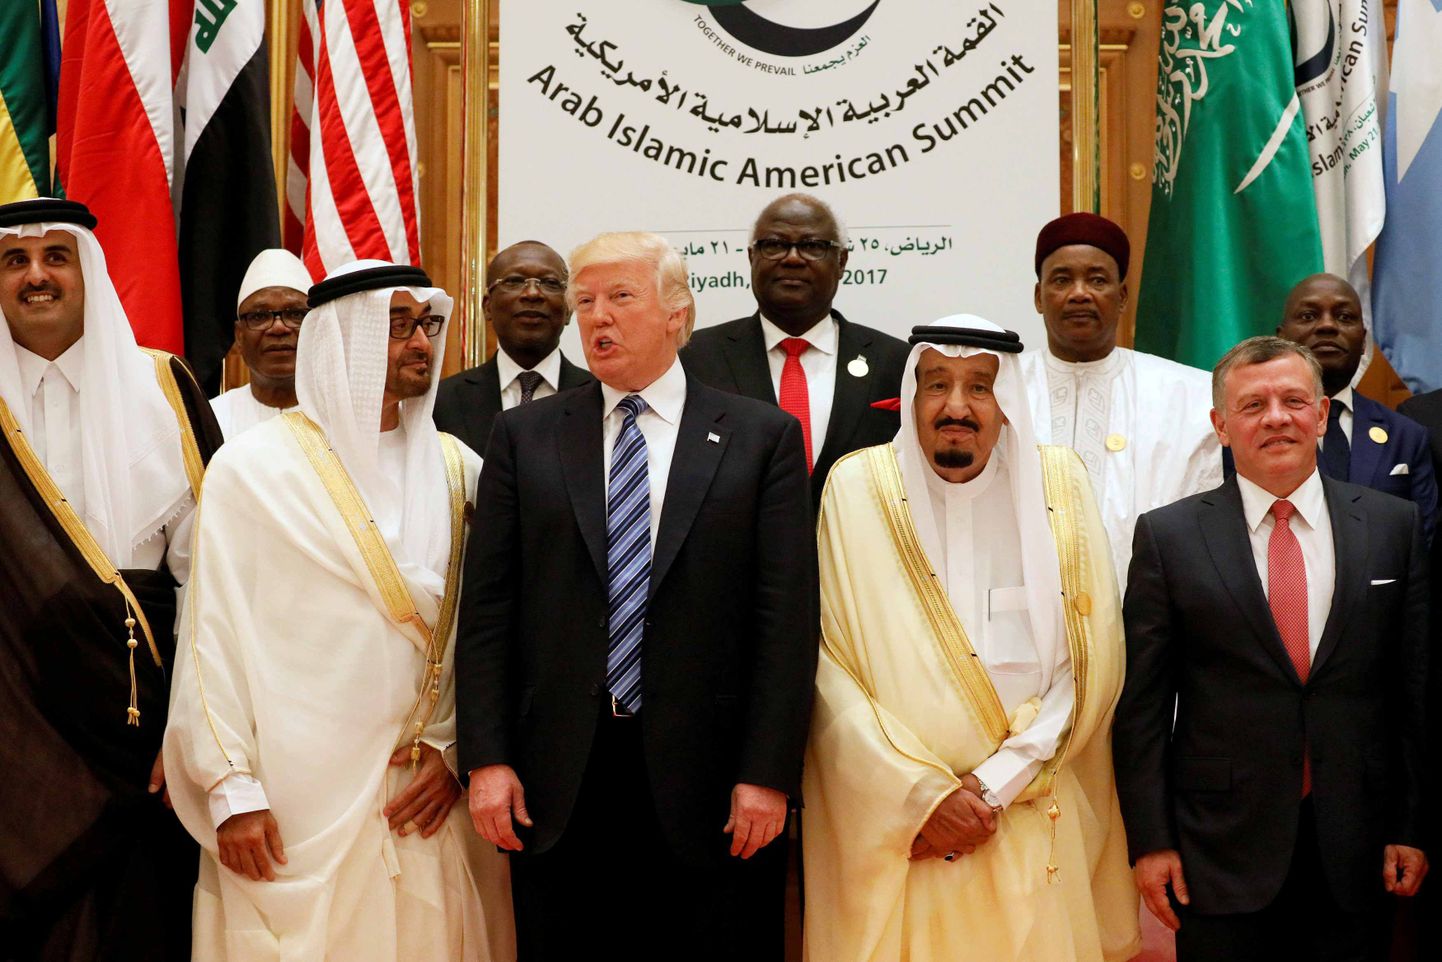 Lõhed seni sõbralikes suhetes hakkasid silma juba mai lõpus Saudi-Araabias peetud Pärsia lahe koostöönõukogu kohtumisel, kus Katari liidrid tõrjuti silmnähtavalt kõrvale. Ka ühisfotol USA presidendi Donald Trumpiga (keskel) puksiti Katari emiir Tamim Bin Hamad al-Thani (vasakul) eemale ja Trumpi kõrval võtsid kohad sisse Abu Dhabi kroonprints šeik Mohammed bin Zayed al-Nahyan (Trumpist vasakul) ja Saudi Araabia kuningas Salman bin Abdulaziz Al Saud (Trumpist paremal). Peagi pärast seda katkestasid rigid diplomaatilsied suhted Katariga.